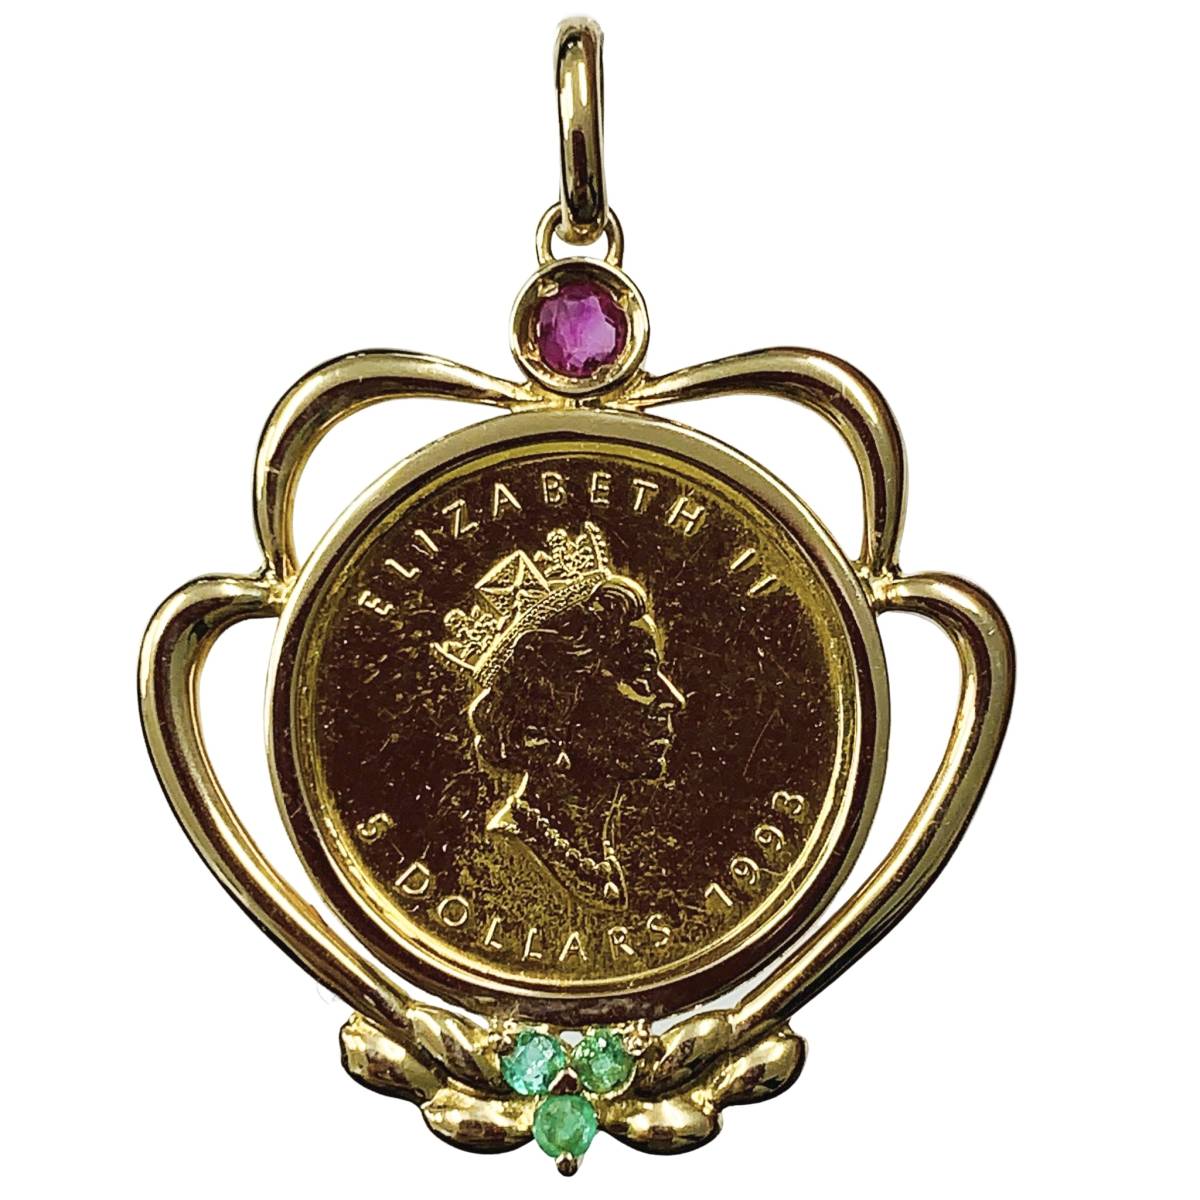 メープル金貨 カナダ エリザベス女王 1993年 K18/24 純金 5.8g 1/10オンス エメラルド ルビー コイン ペンダントトップ コレクション